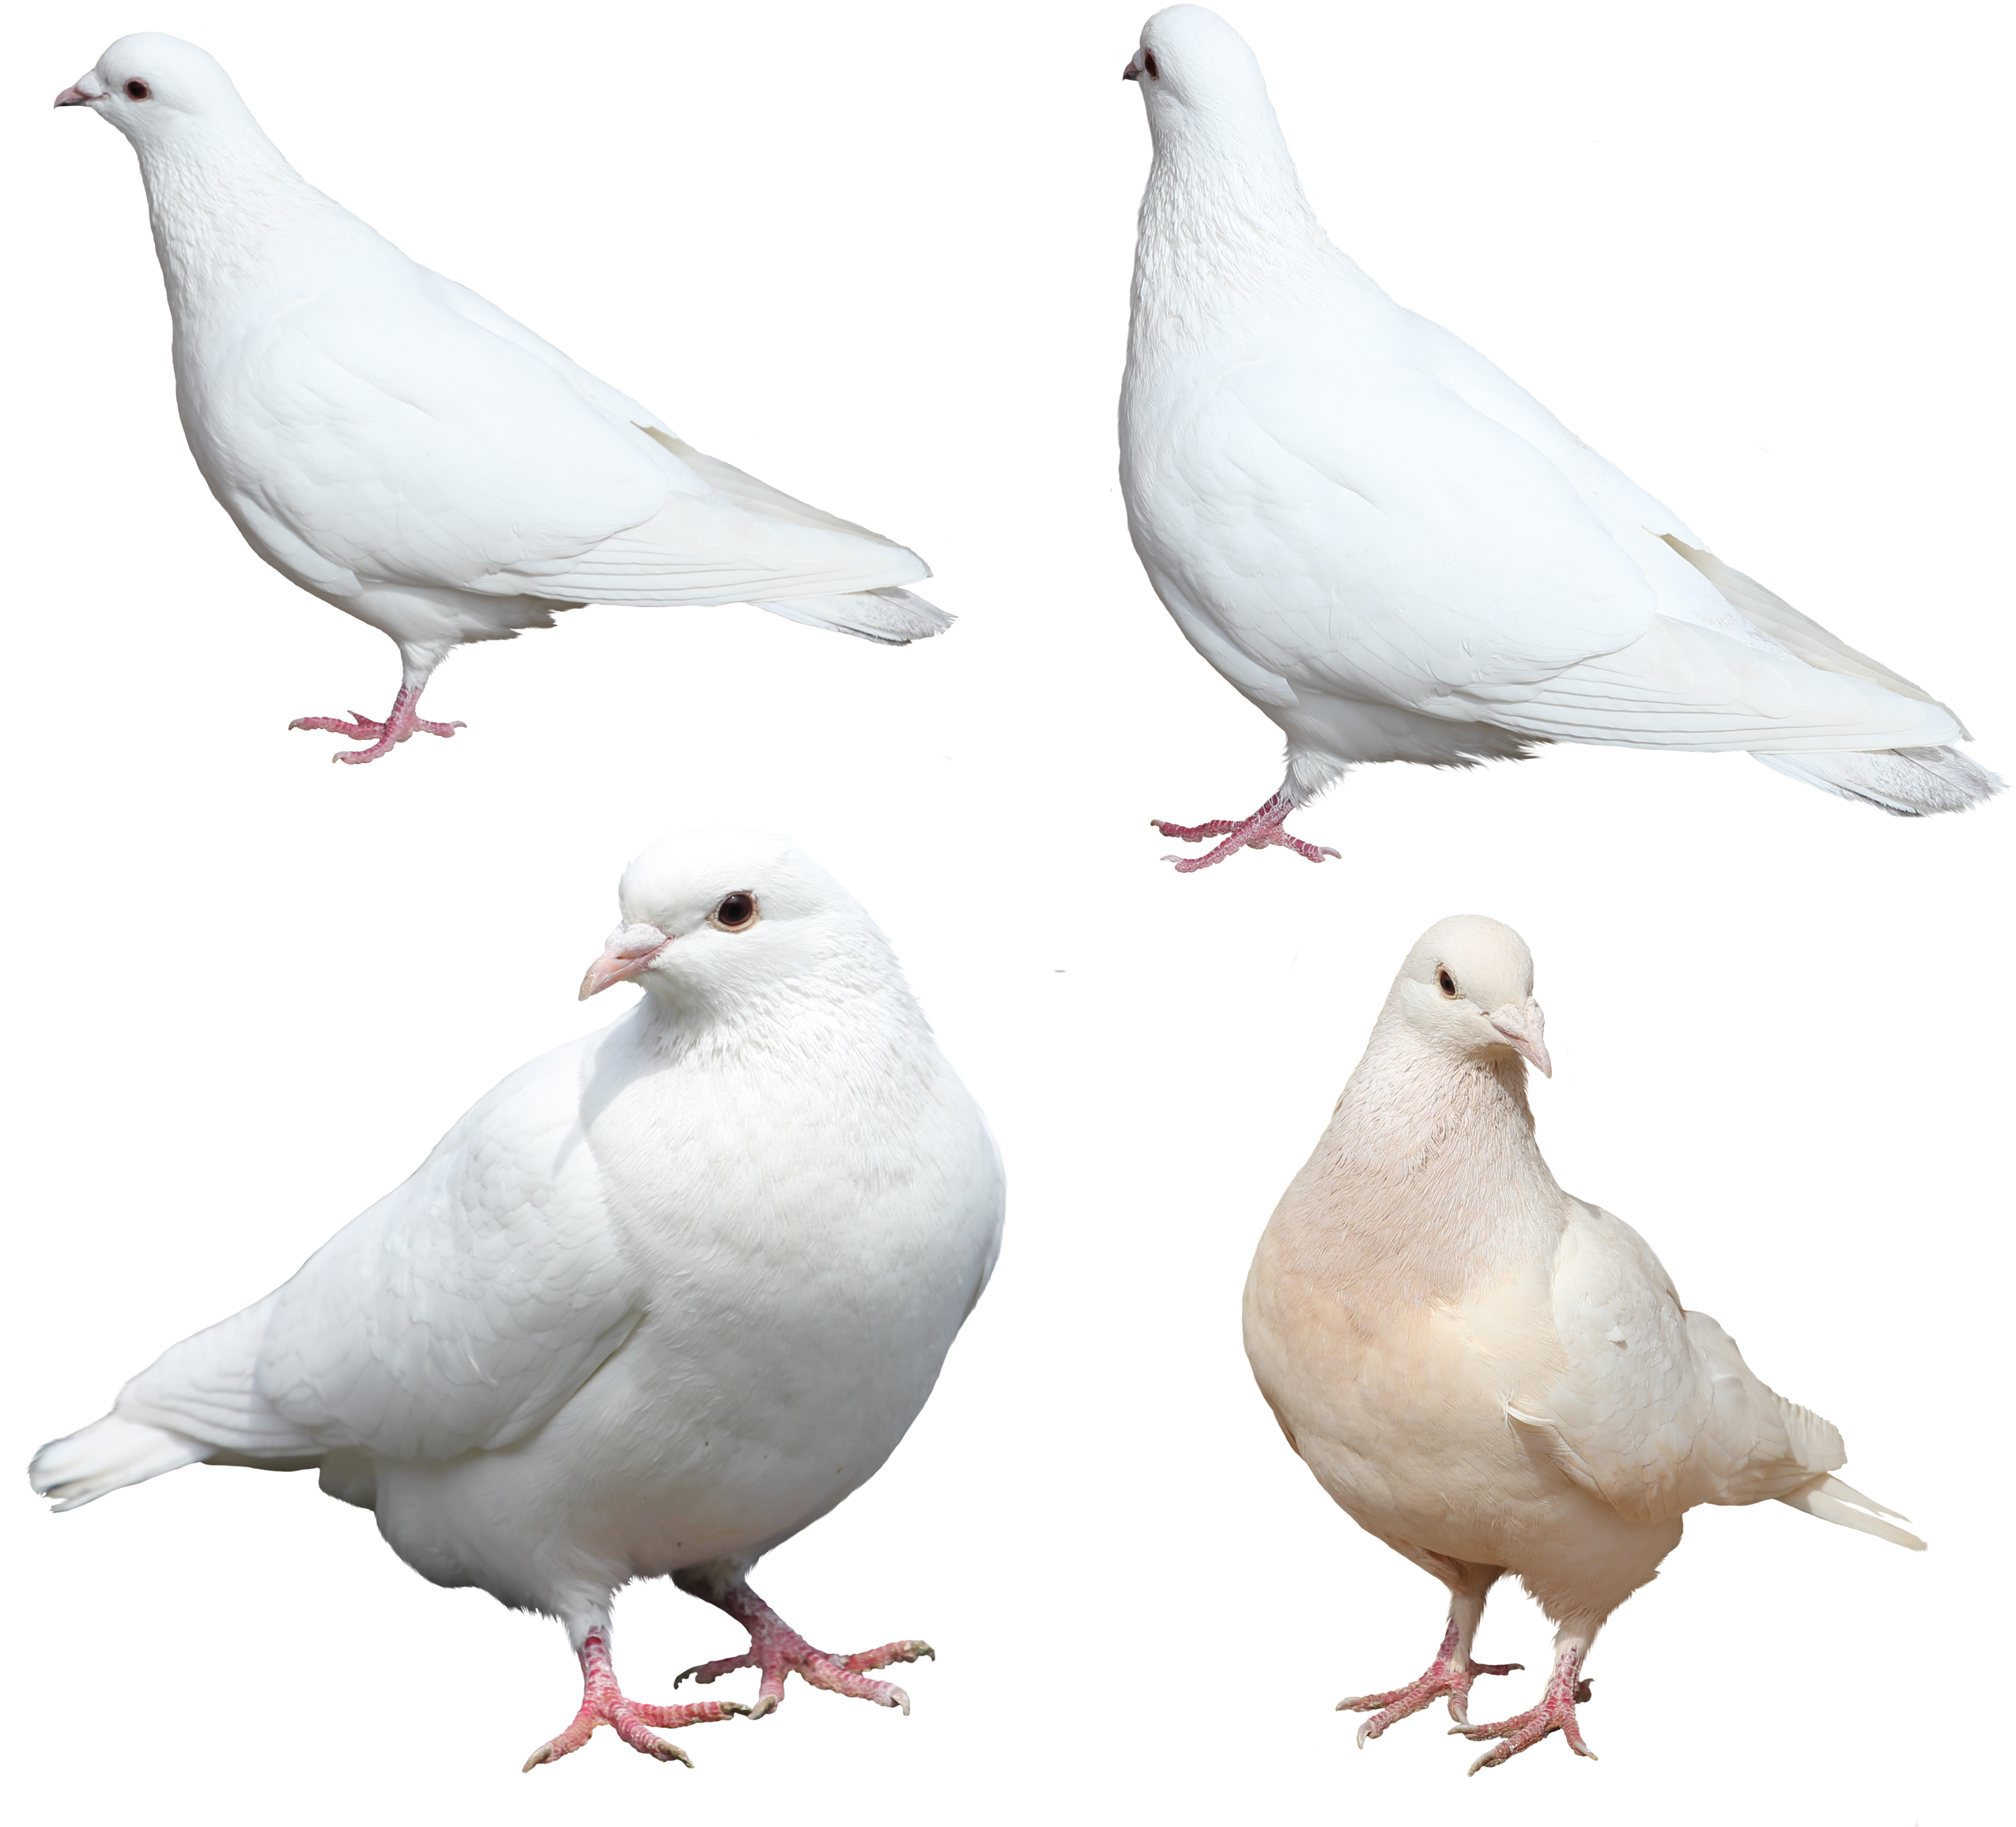 흰 비둘기